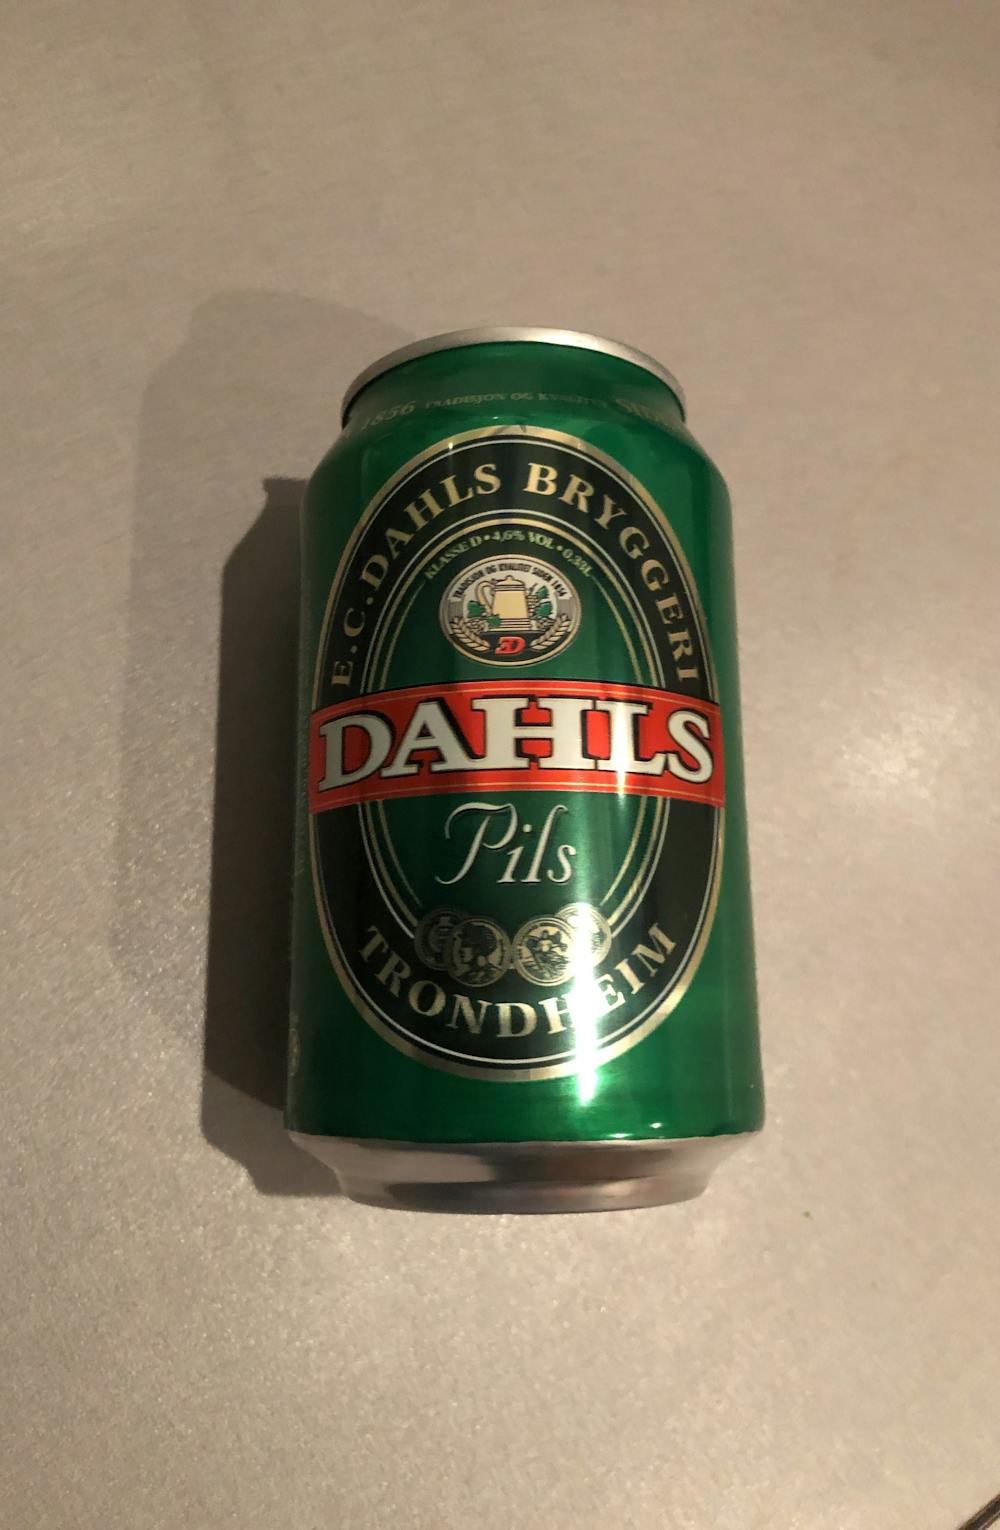 Dahls pils, E. C. Dahls bryggeri